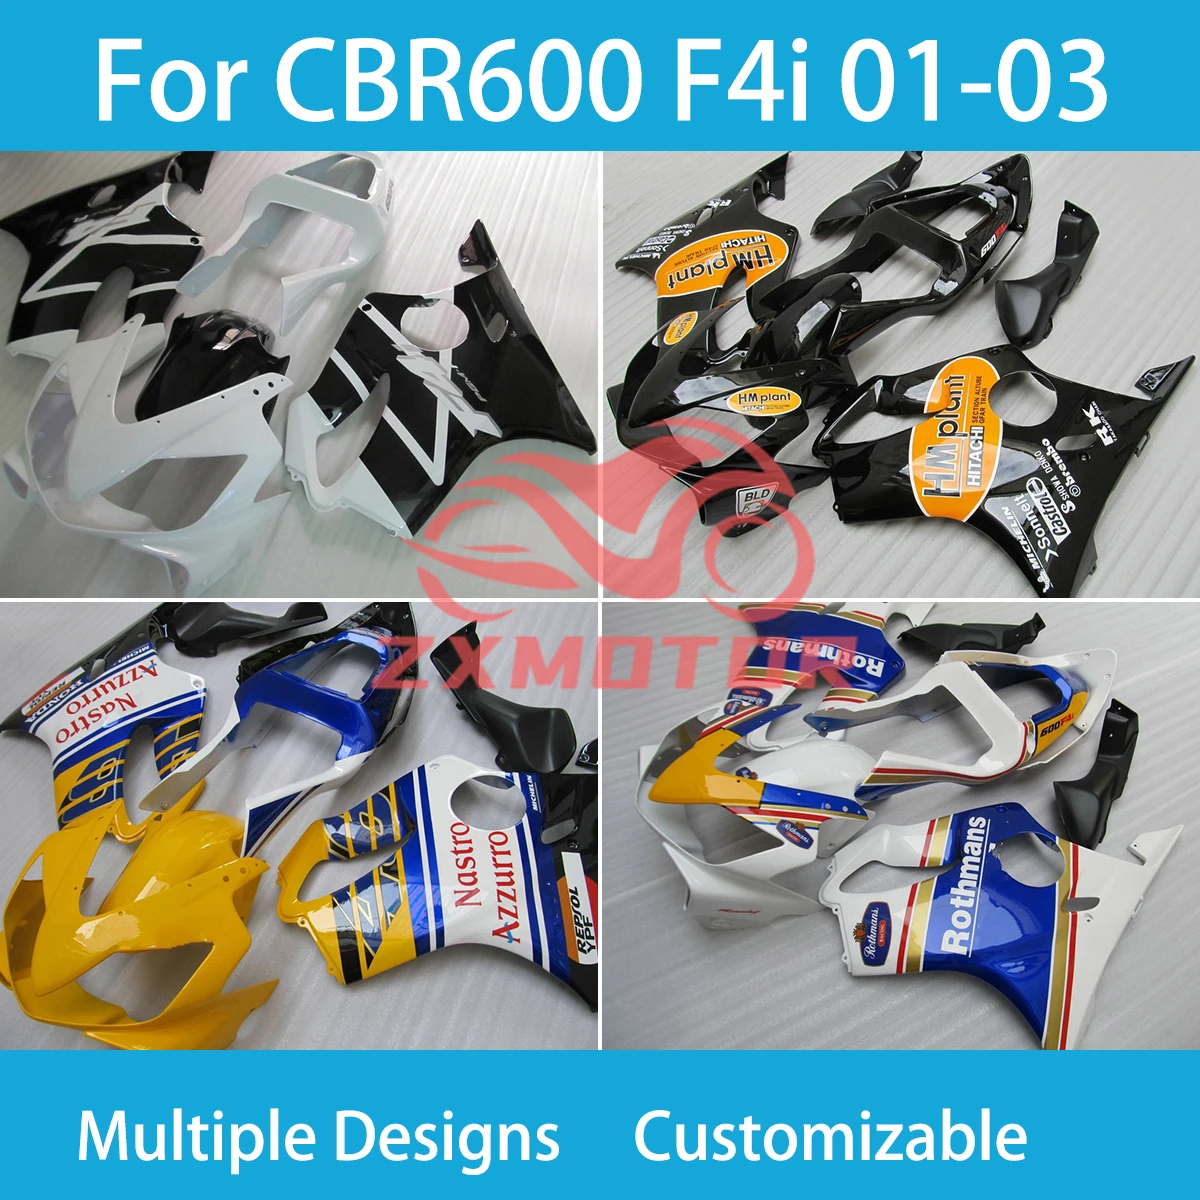 

CBR 600 F4i 01 02 03 детали корпуса Обтекатели для Honda CBR600 F4i 2001 2002 комплект обтекателей для мотоциклов пластиковый комплект